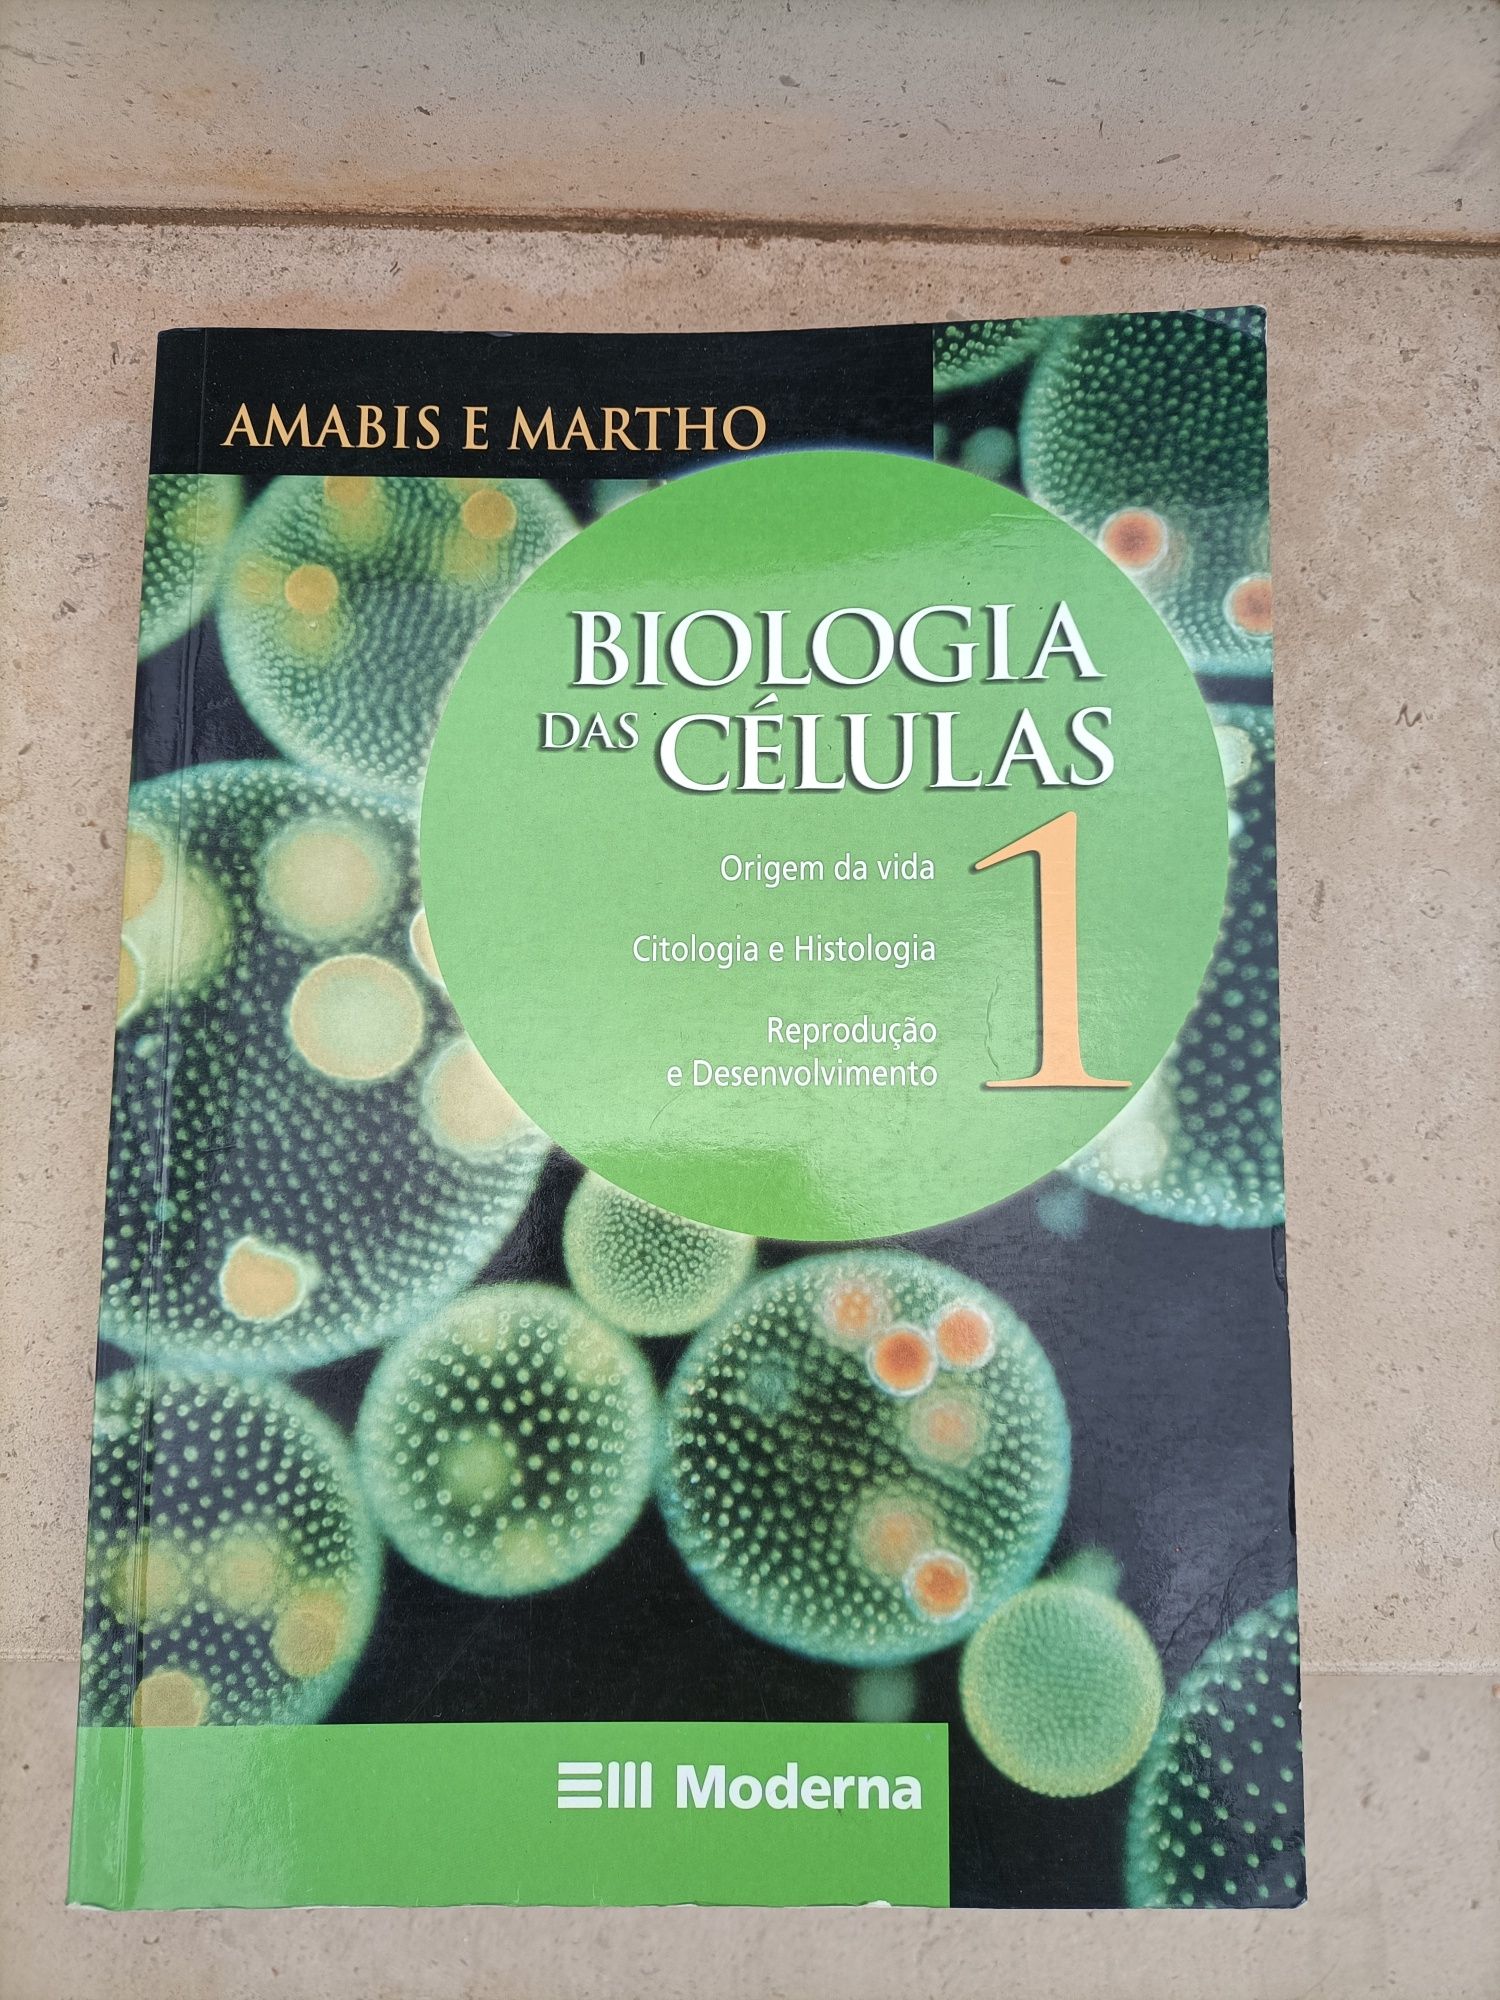 Biologia das Células, por Amabis e Martho